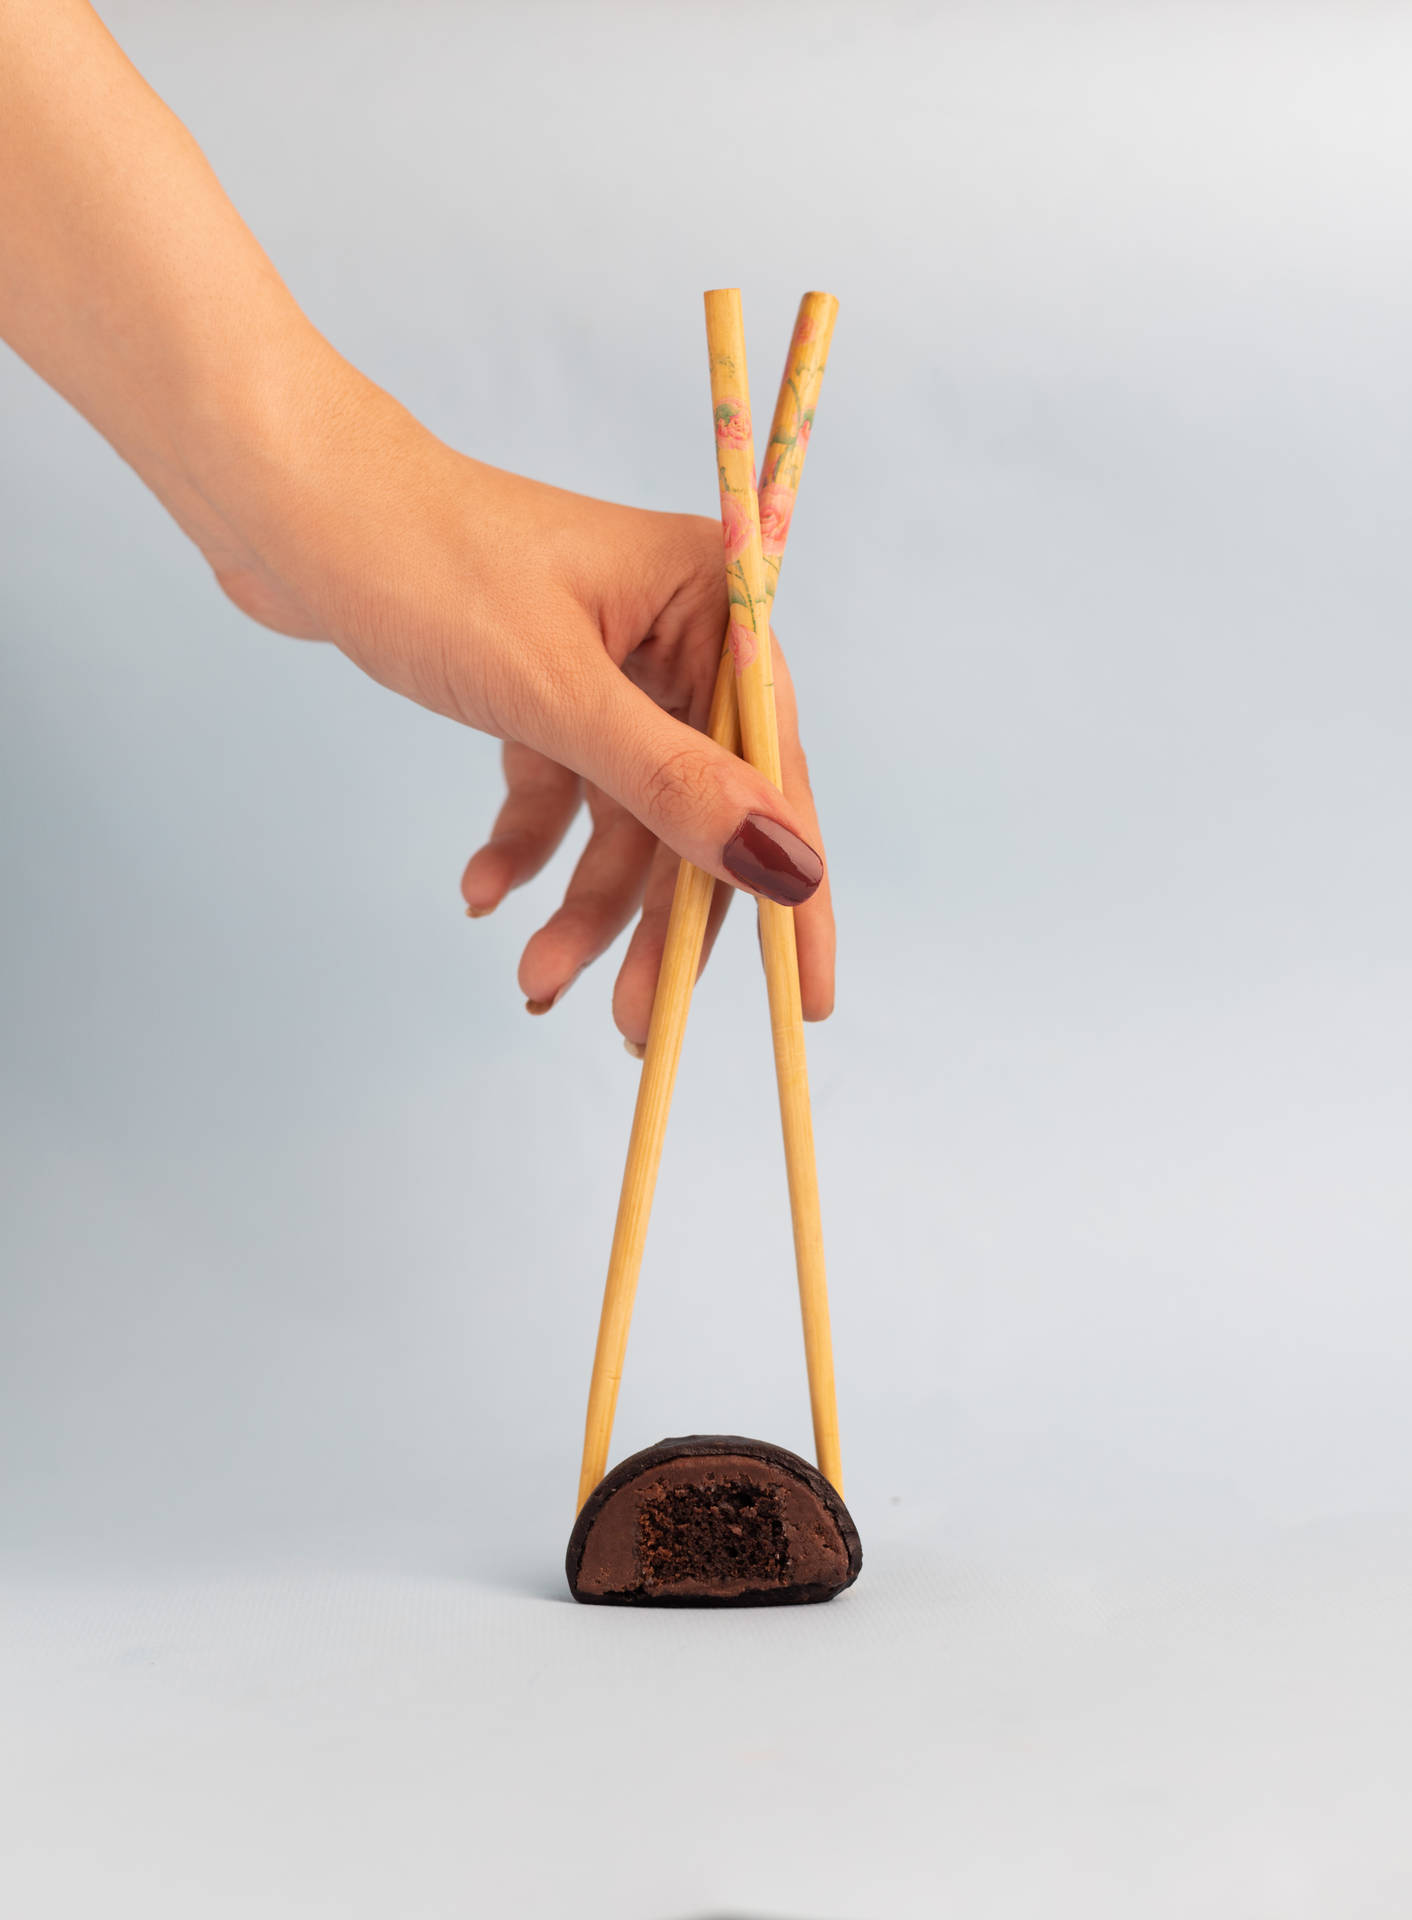 Modern Mochi With Chopsticks